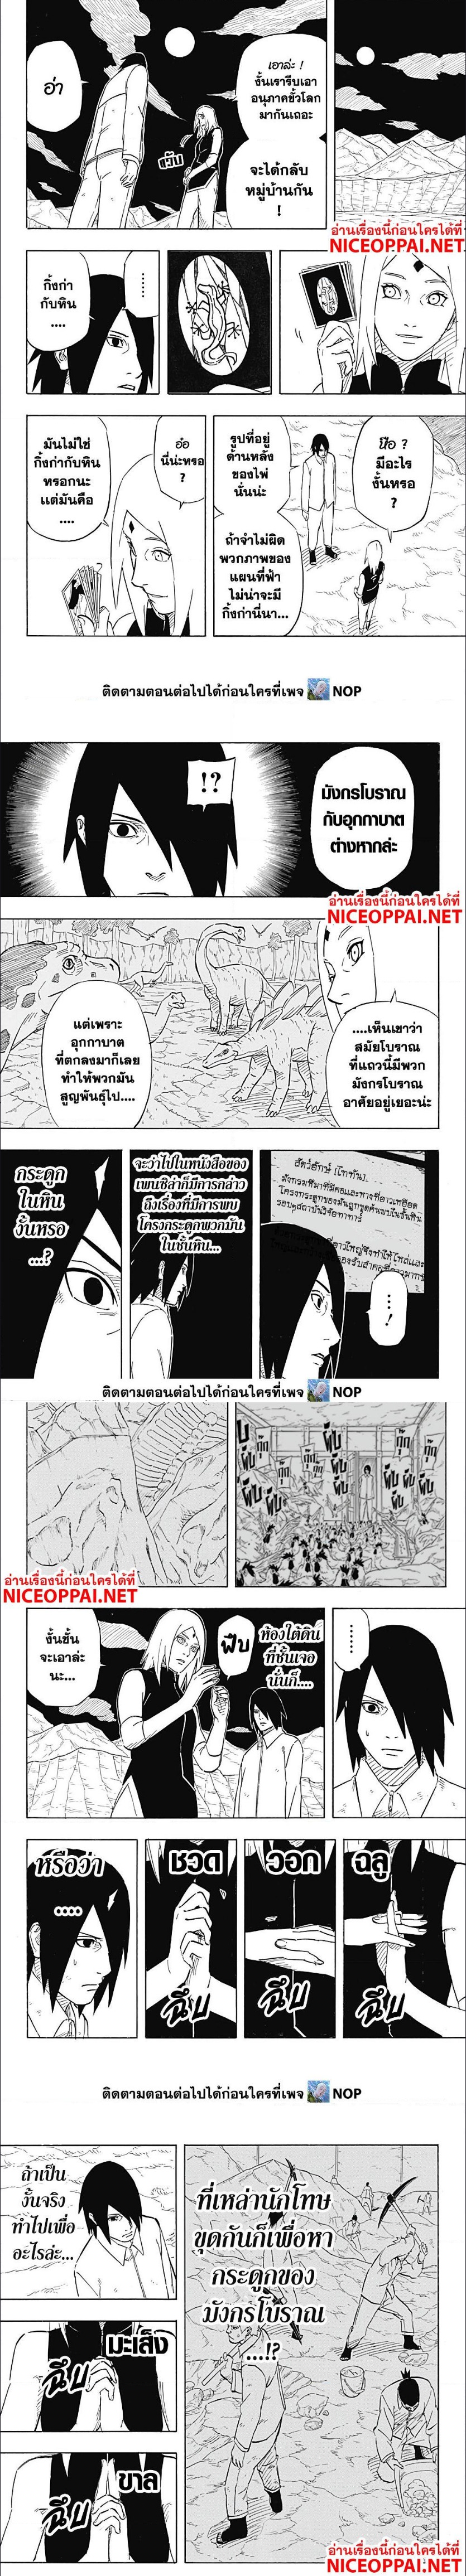 Naruto Sasuke’s Story 6.2 (3)